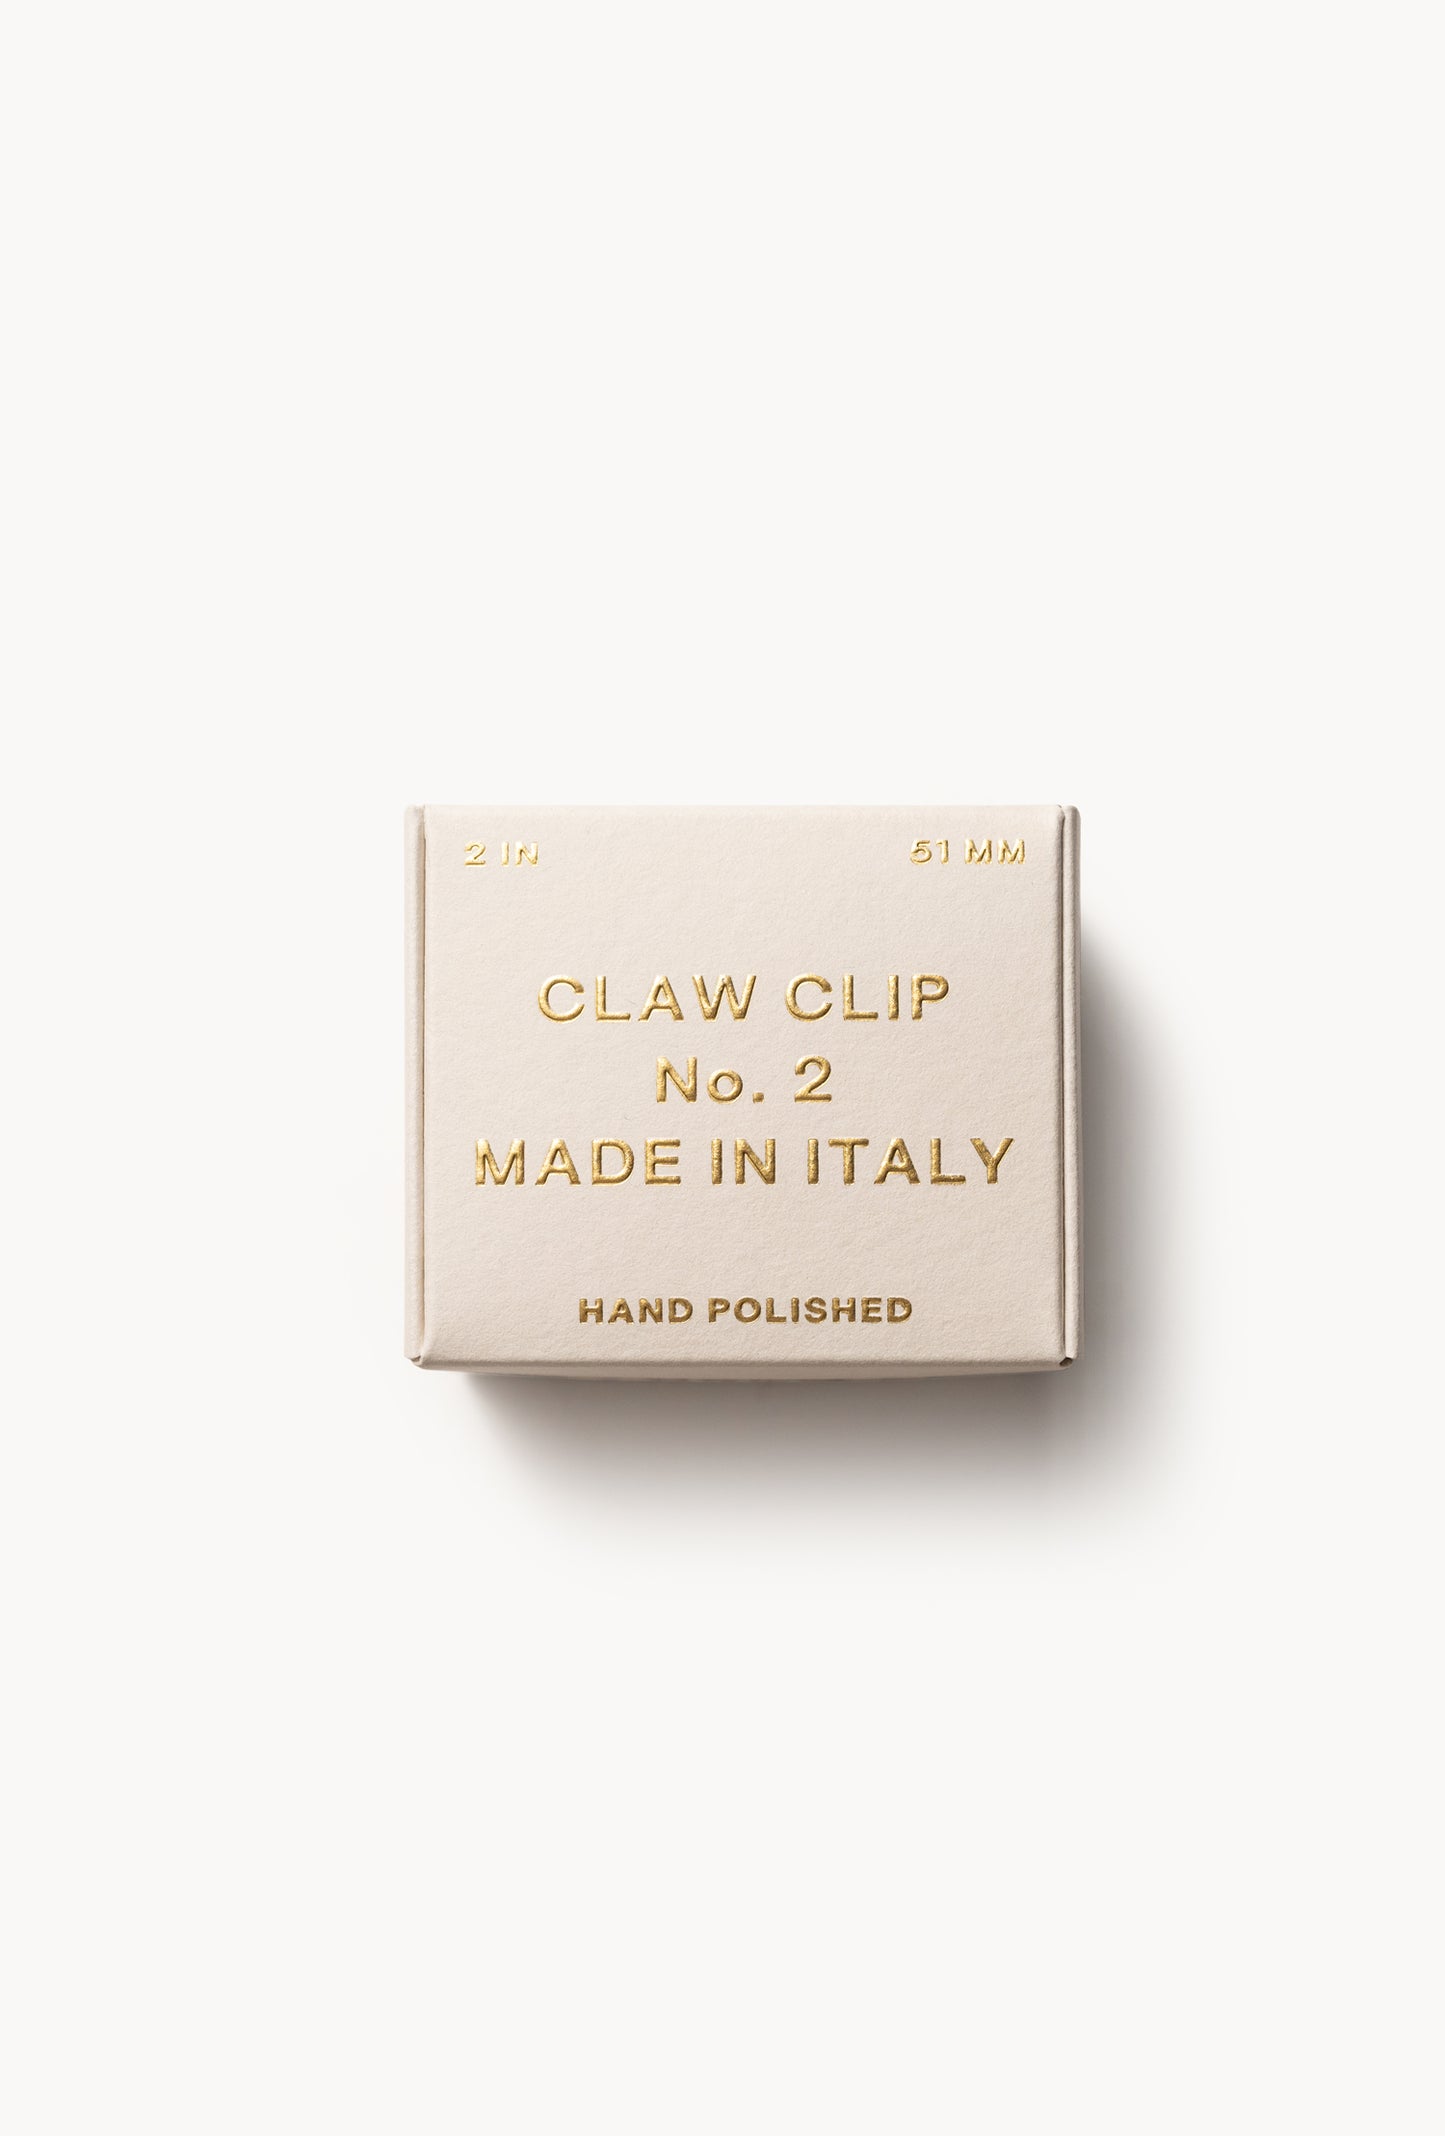 No. 2 Claw Clip